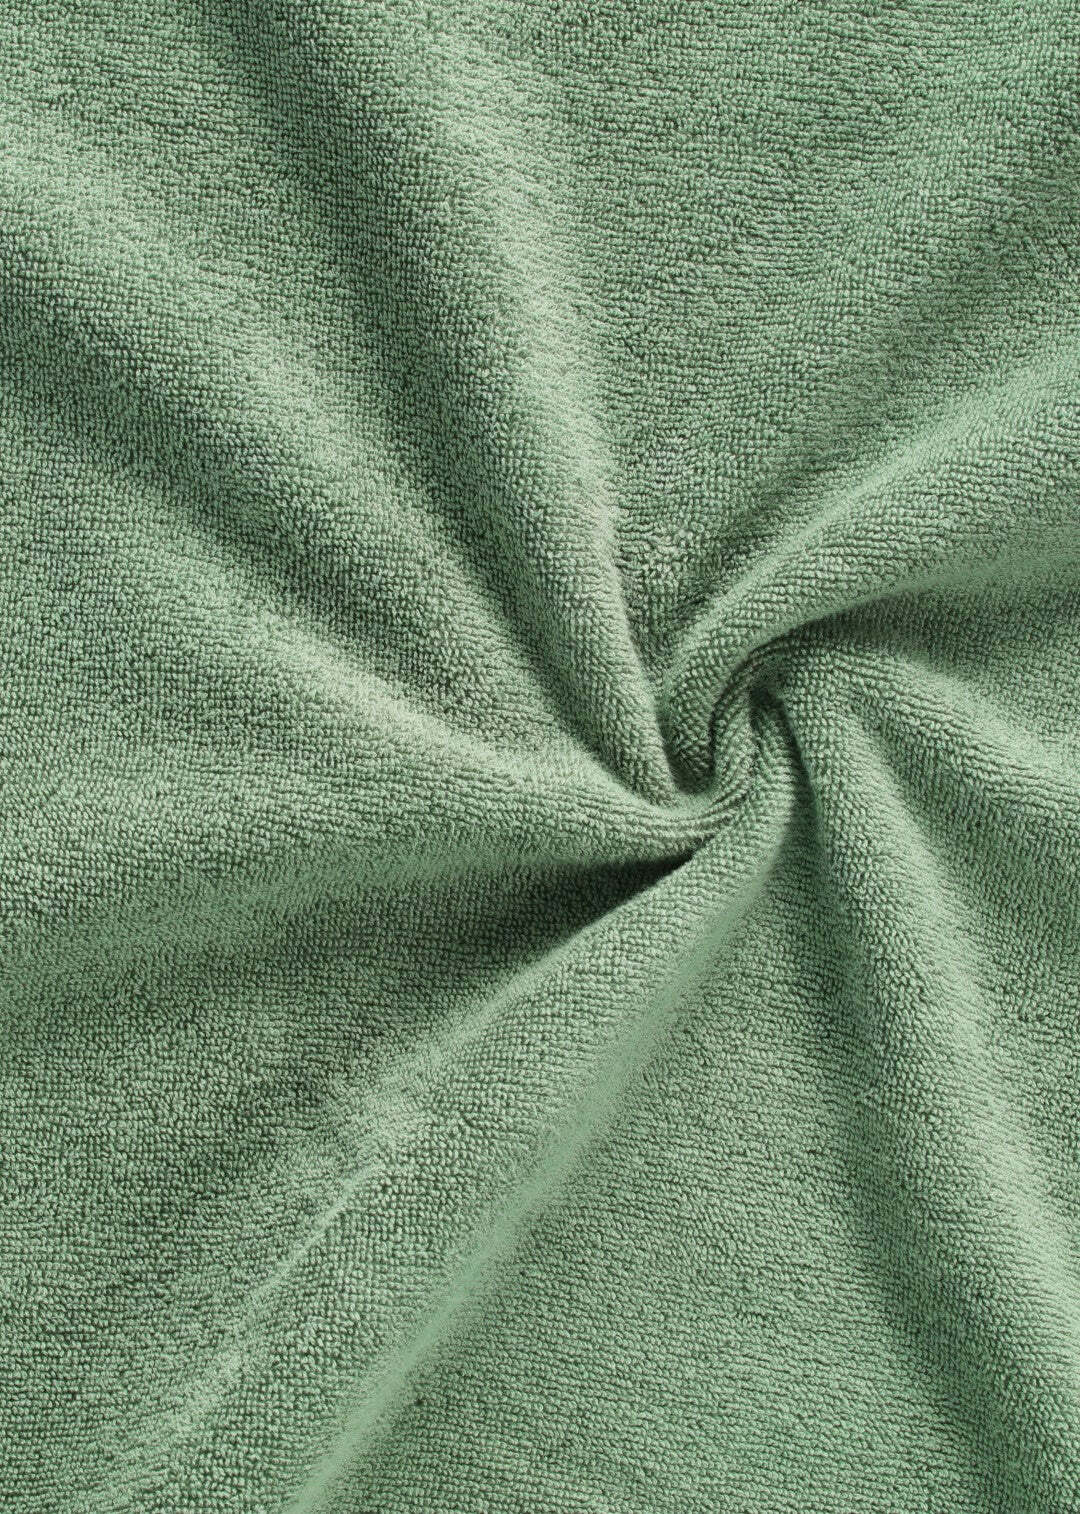 Handtuch Baumwolle Dunkelgrün 100 x 150 cm 1